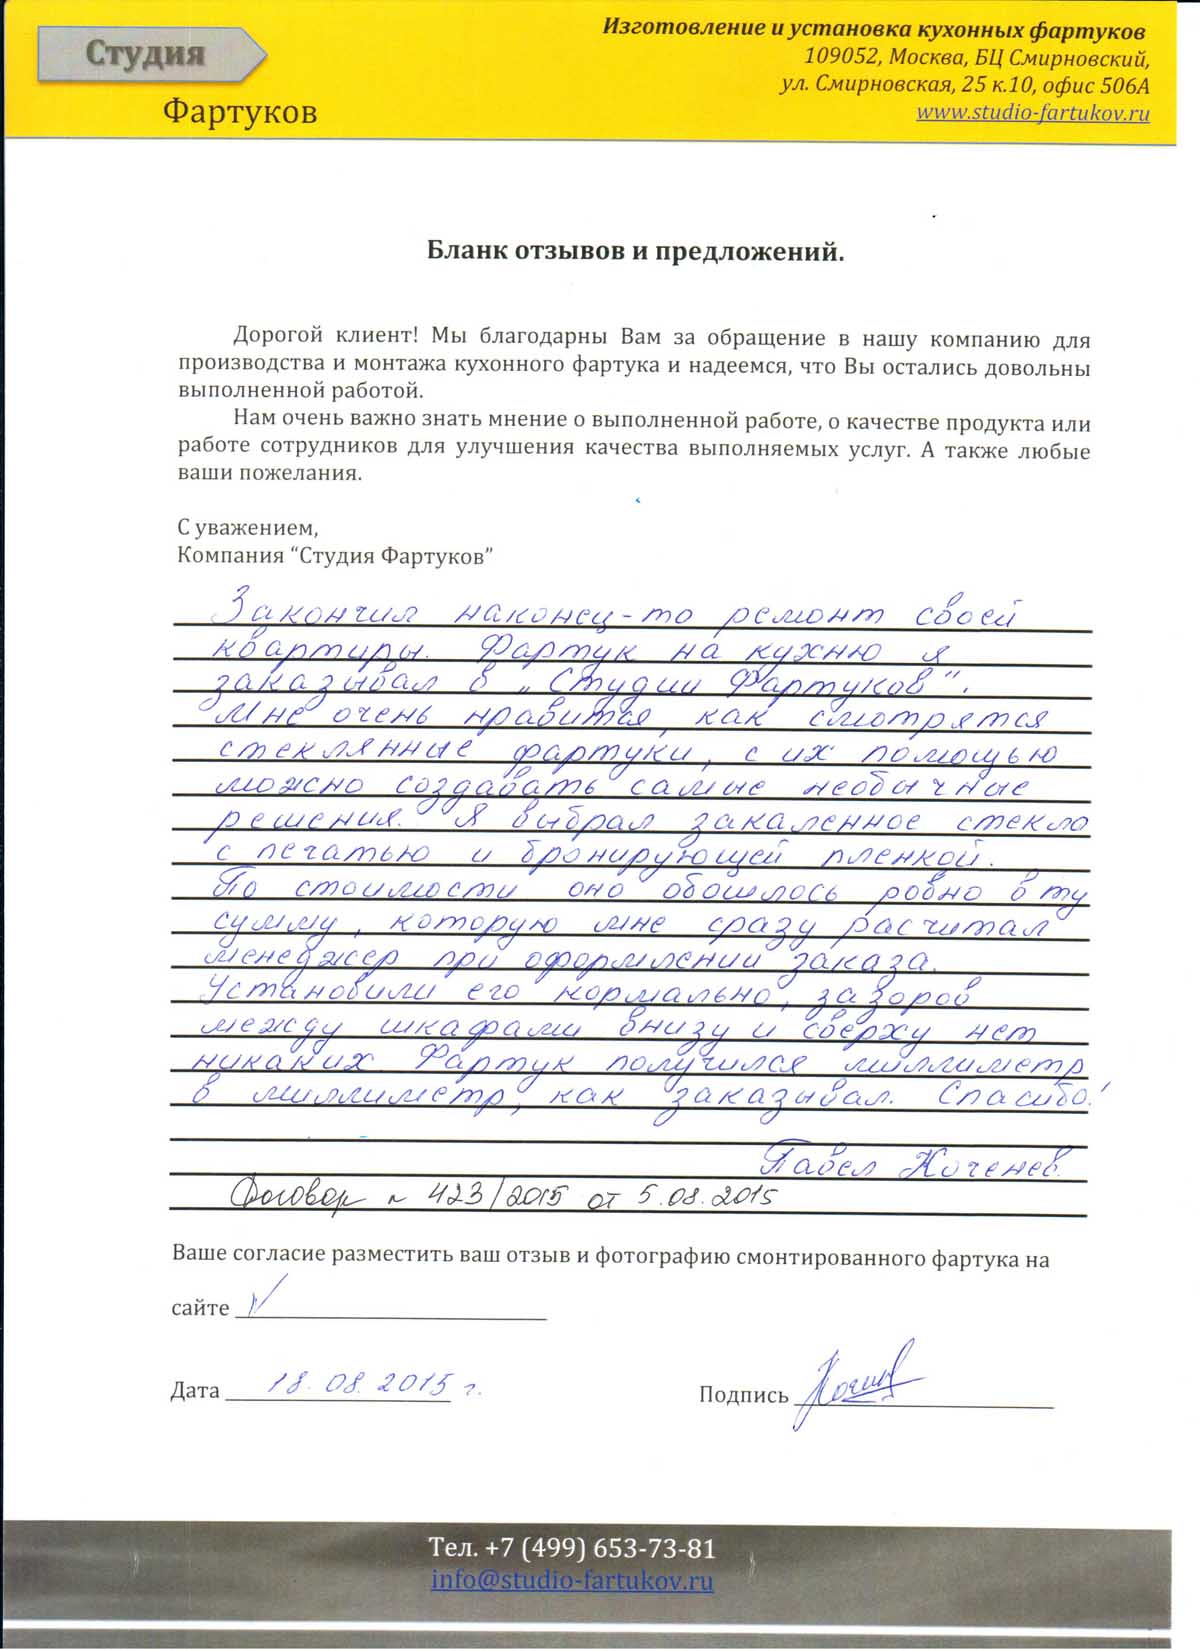 Отзыв Павла Коченева от 18.08.2015 по Договору 423/2015